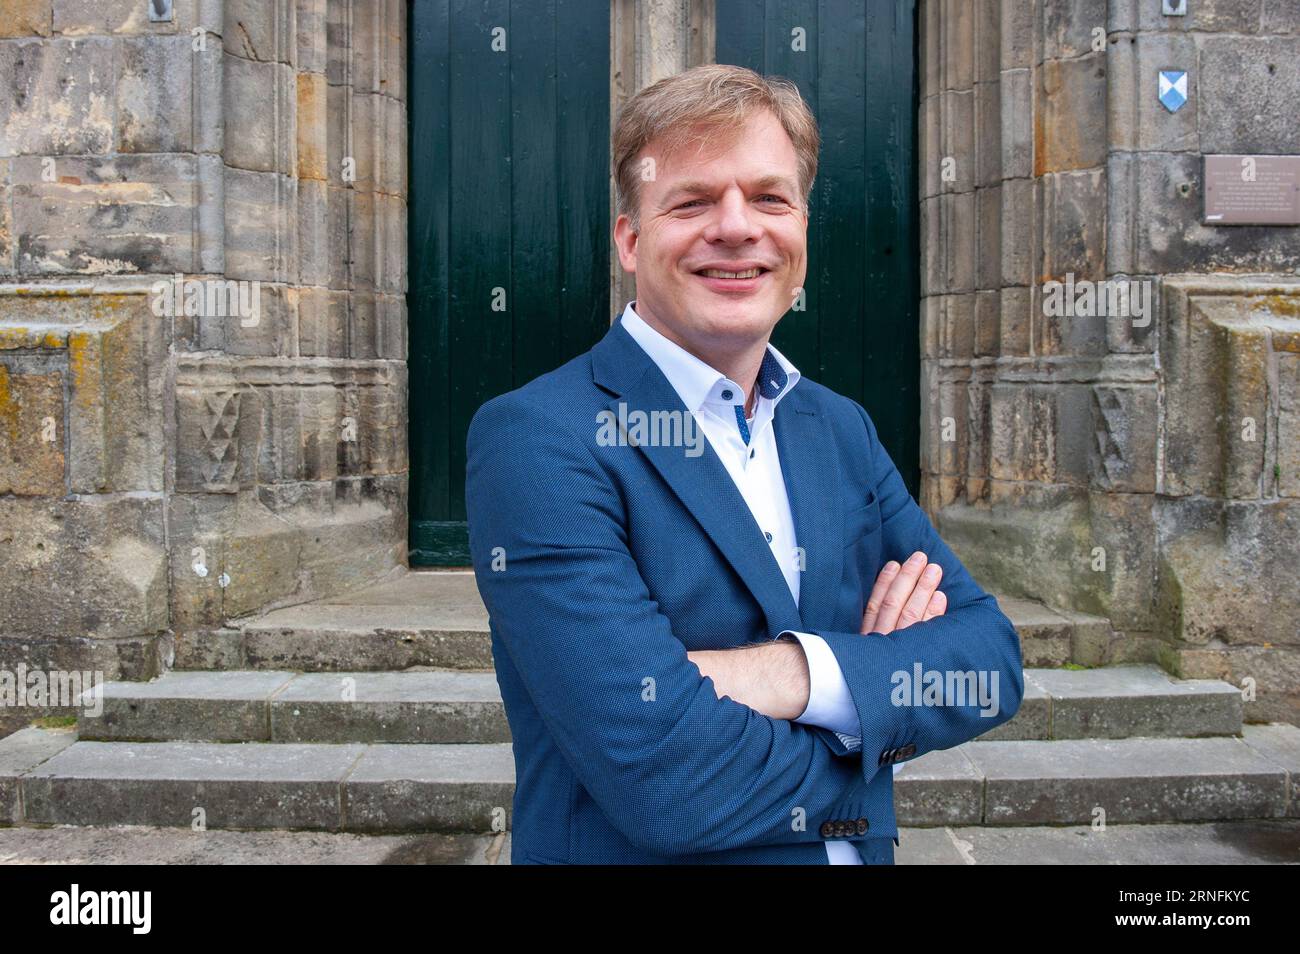 ENSCHEDE, PAESI BASSI - JUL 05, 2020: Il politico olandese Pieter Omtzigt è il politico più popolare nella camera dei rappresentanti. Foto Stock